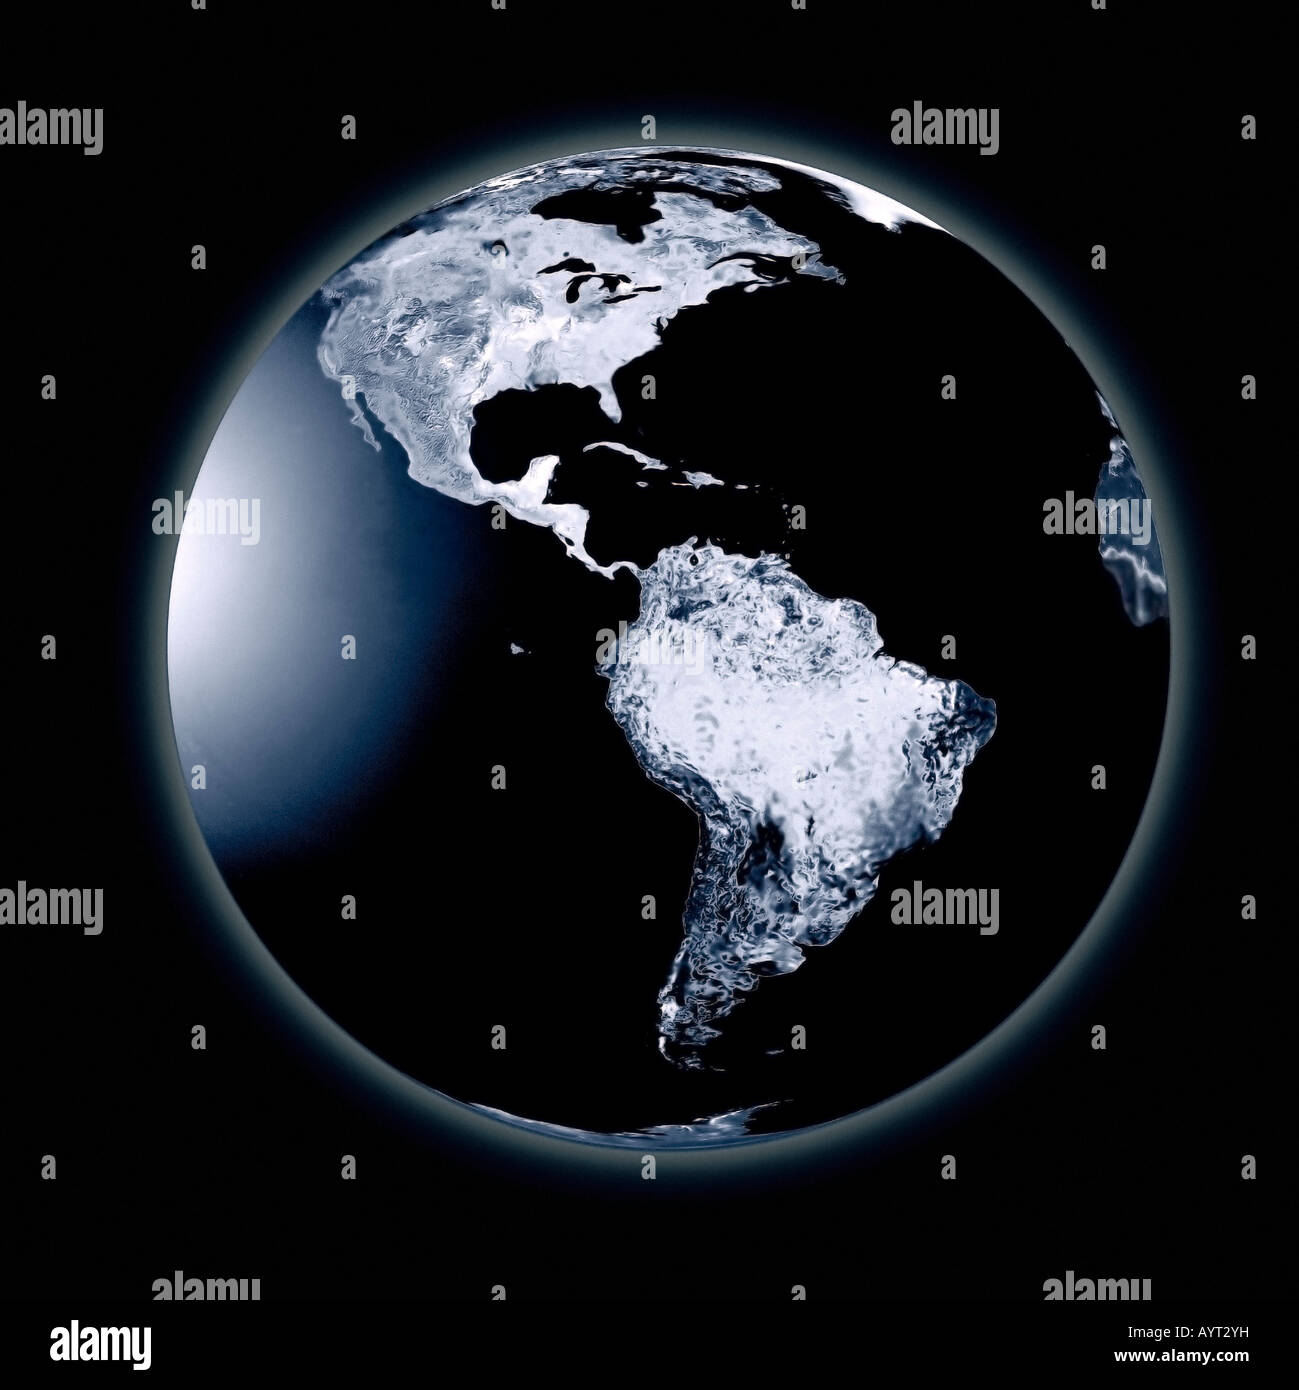 Une illustration numérique d'un rhume et congelé la planète Terre. Illustration numérique représentant une planète terre froide et gelée. Banque D'Images